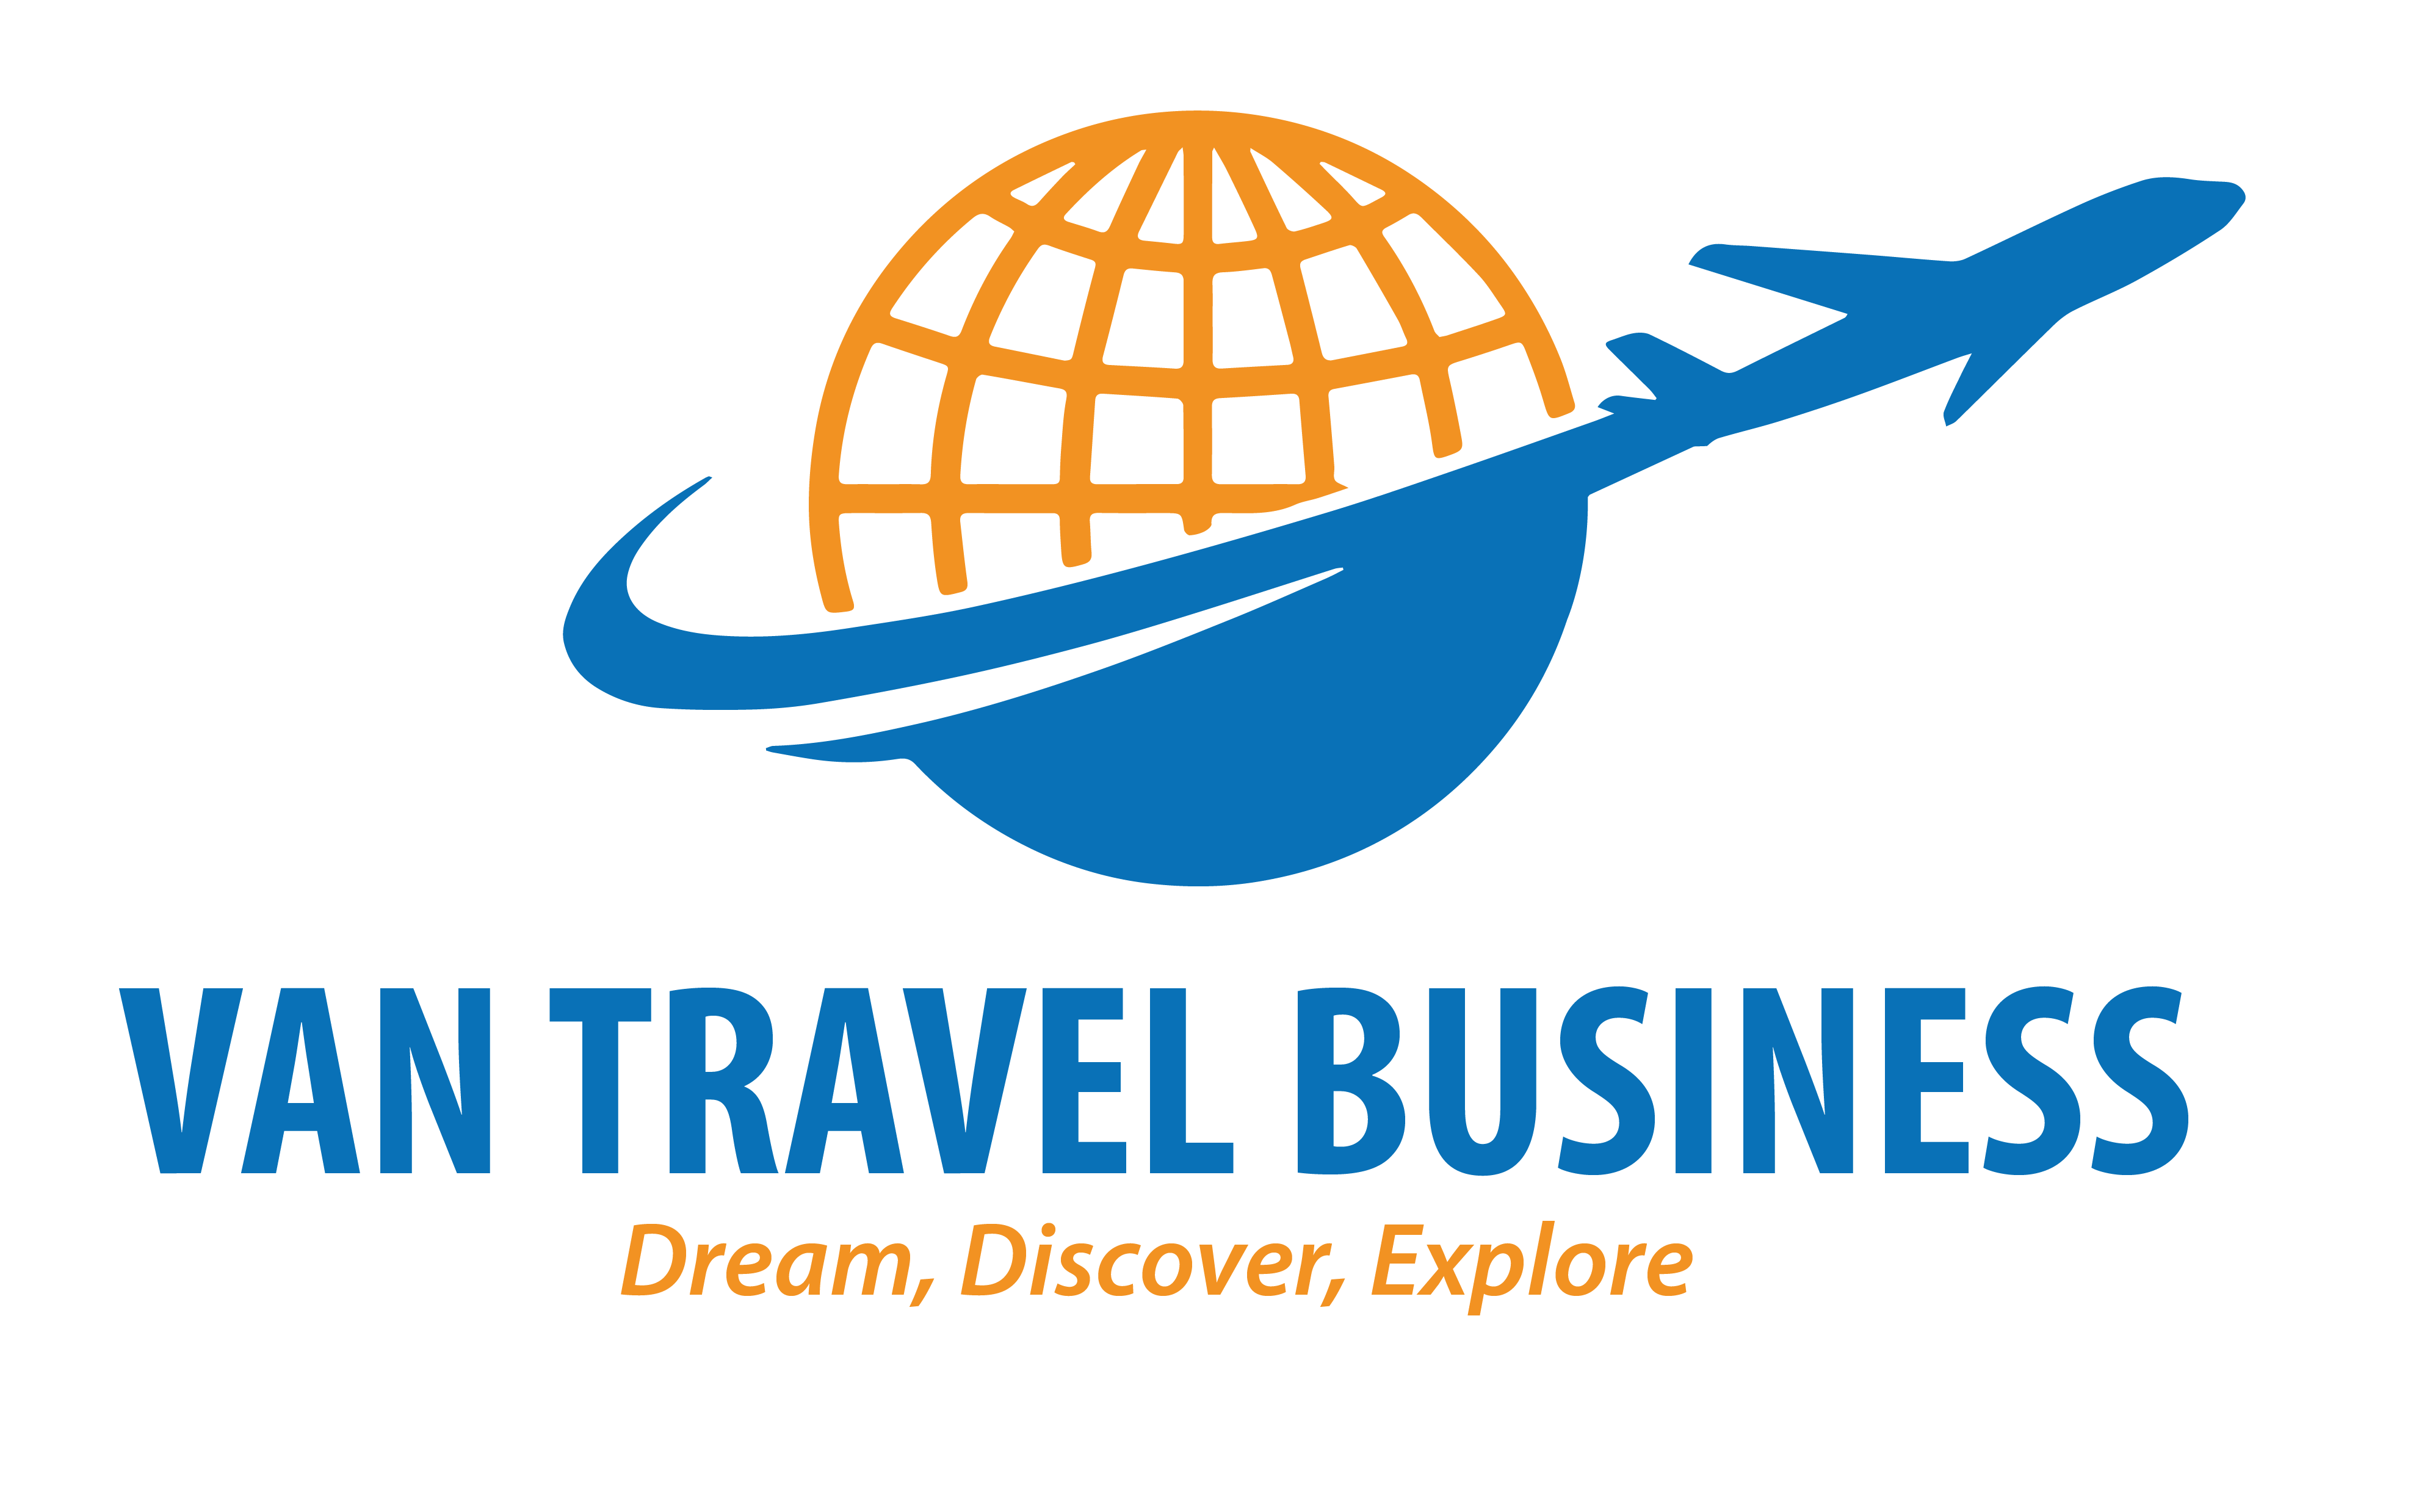 Van travel business